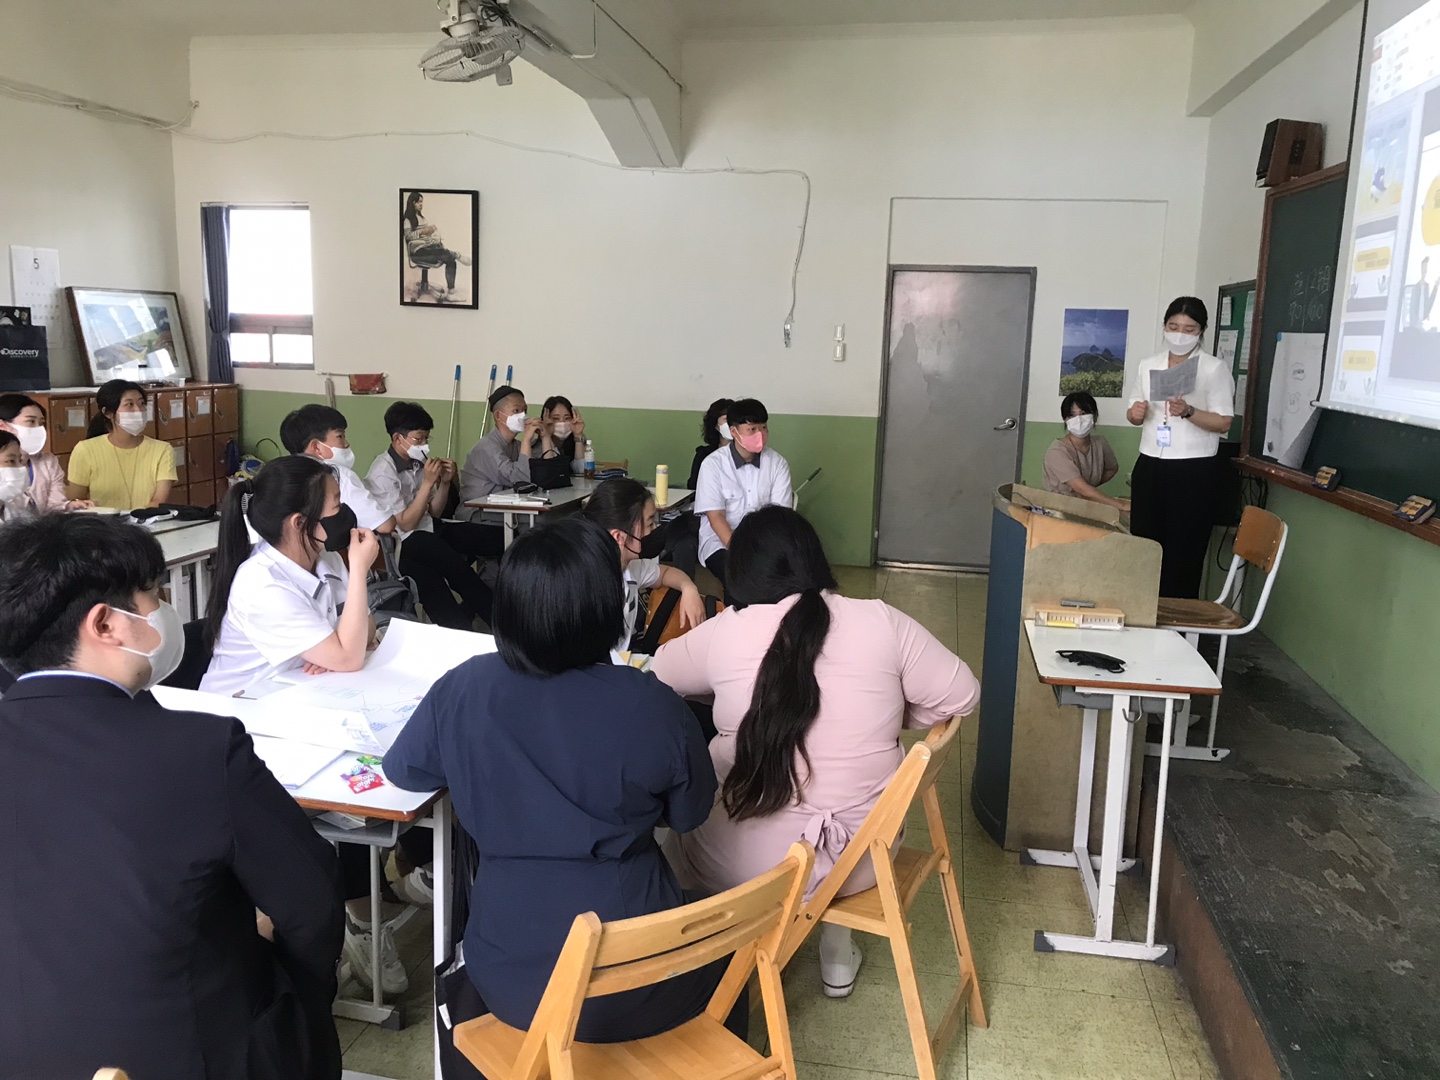 韓國大學實習教師以清楚美觀的PPT教材，分組進行授課以及進行教學活動